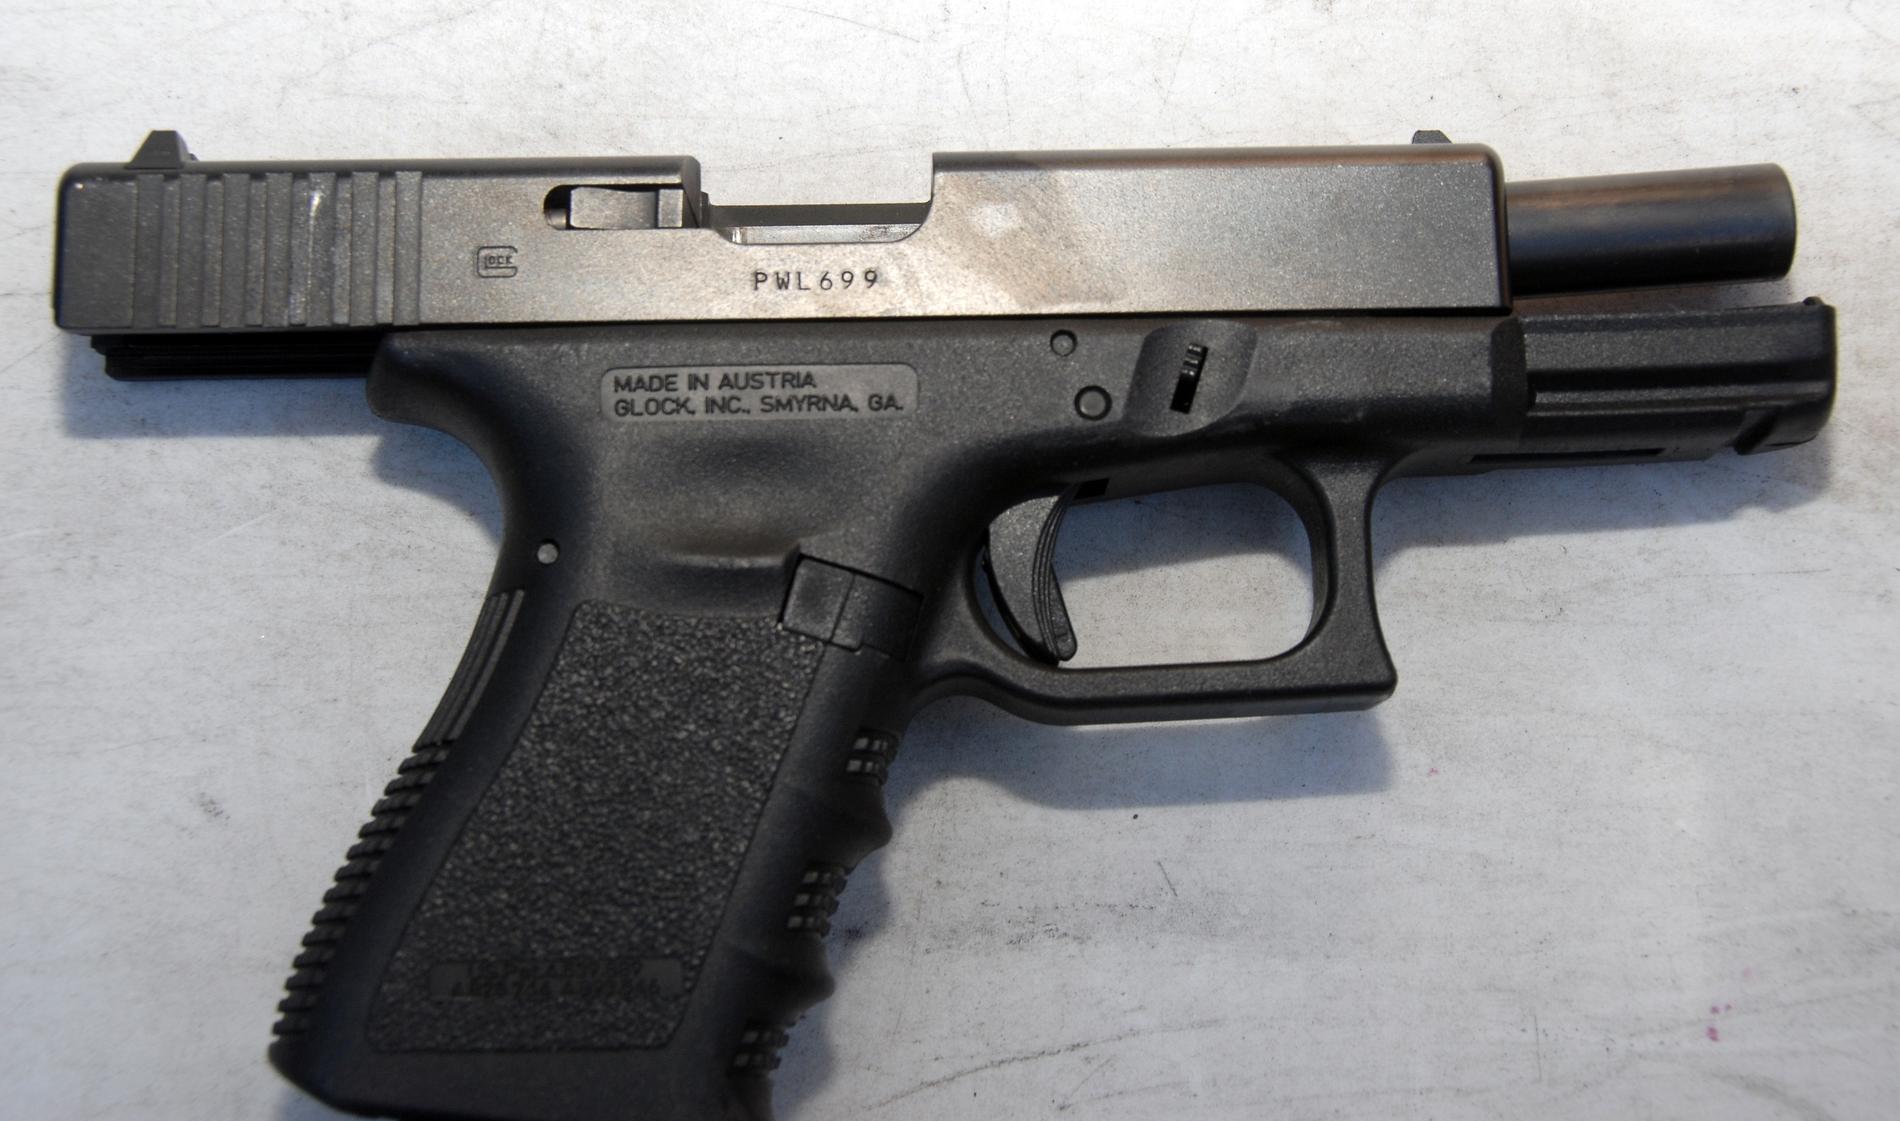 Sex stycken pistoler av modell Glock 17 ska enligt uppgift tidigare blivit stulna från ett låst skåp i Regeringskansliet. Nu ska ytterligare en pistol ha stulits.